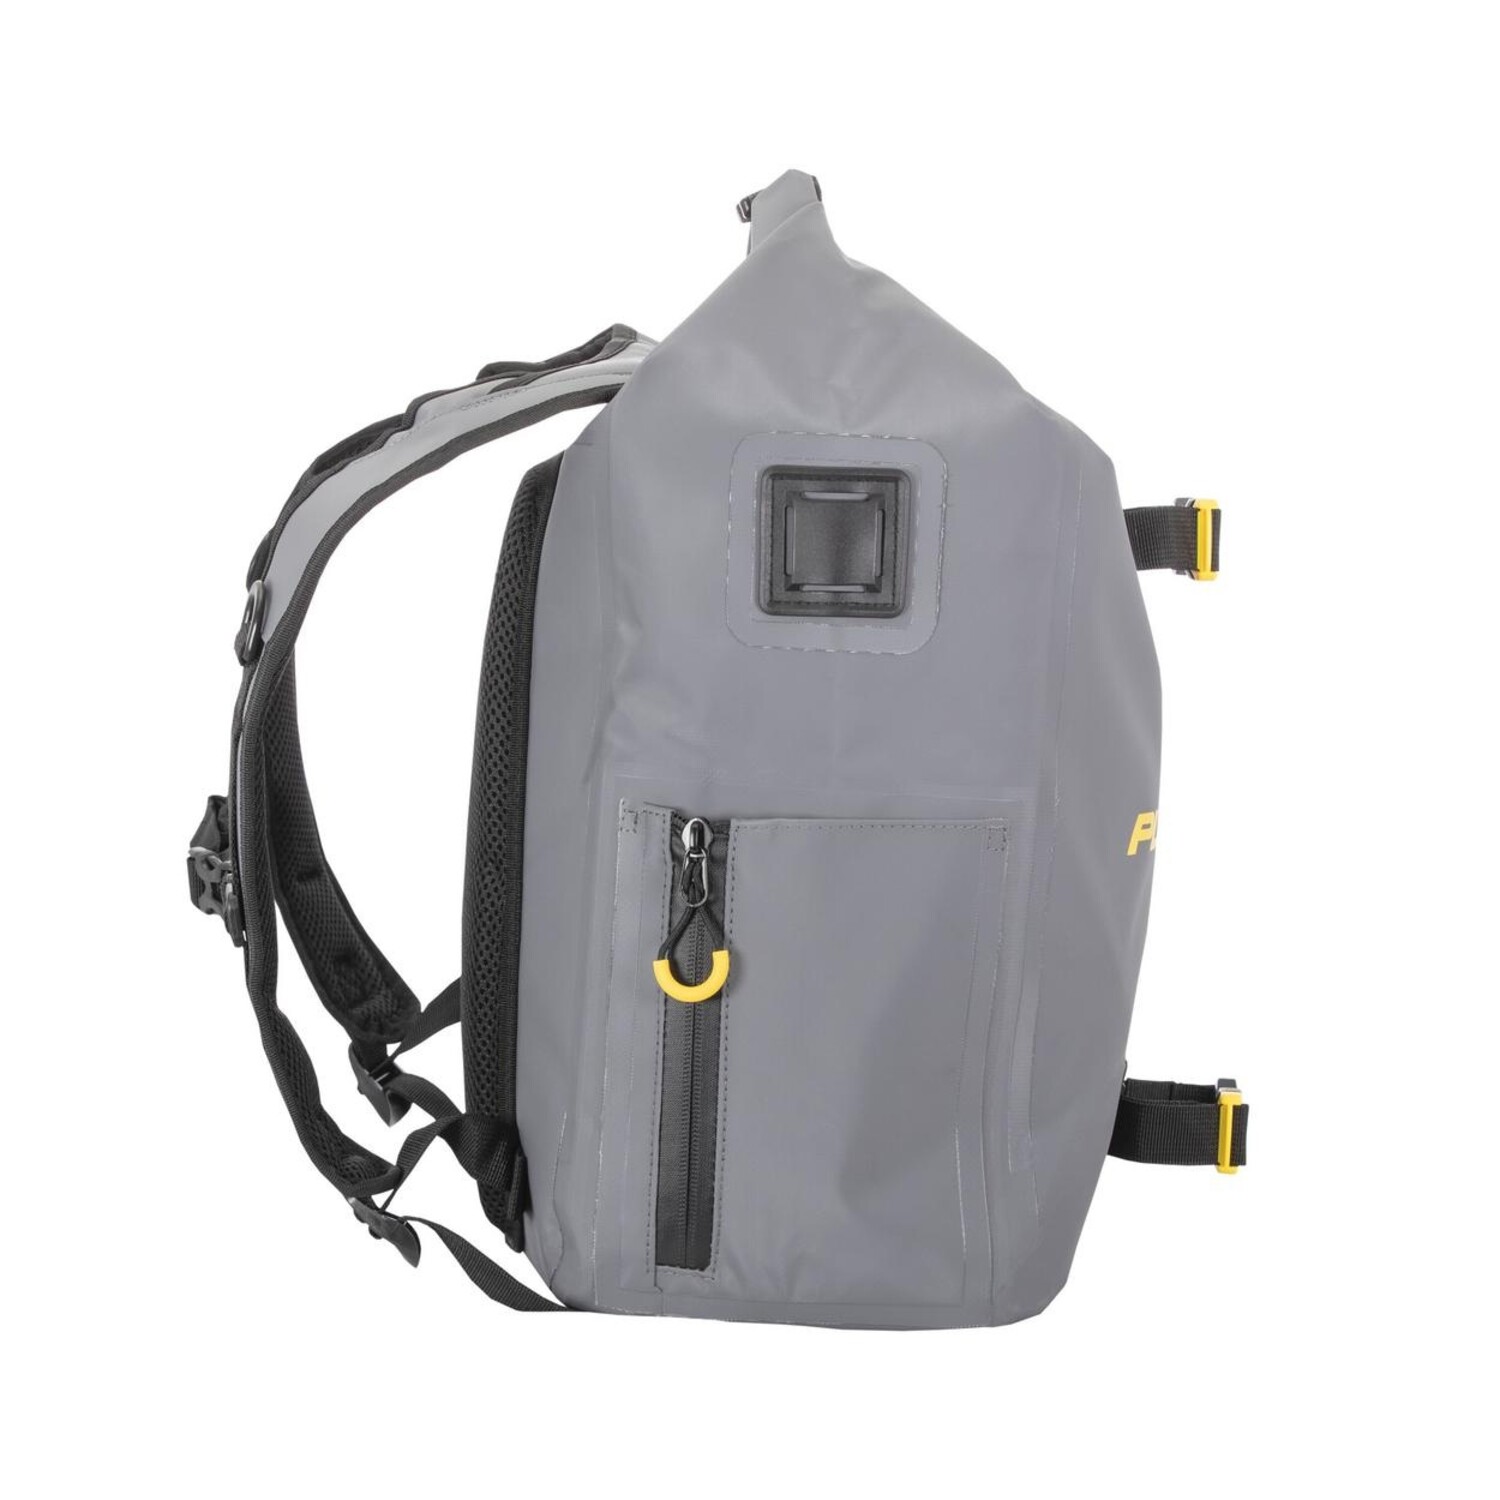 Plano Plano Z-Series Waterproof Backpack